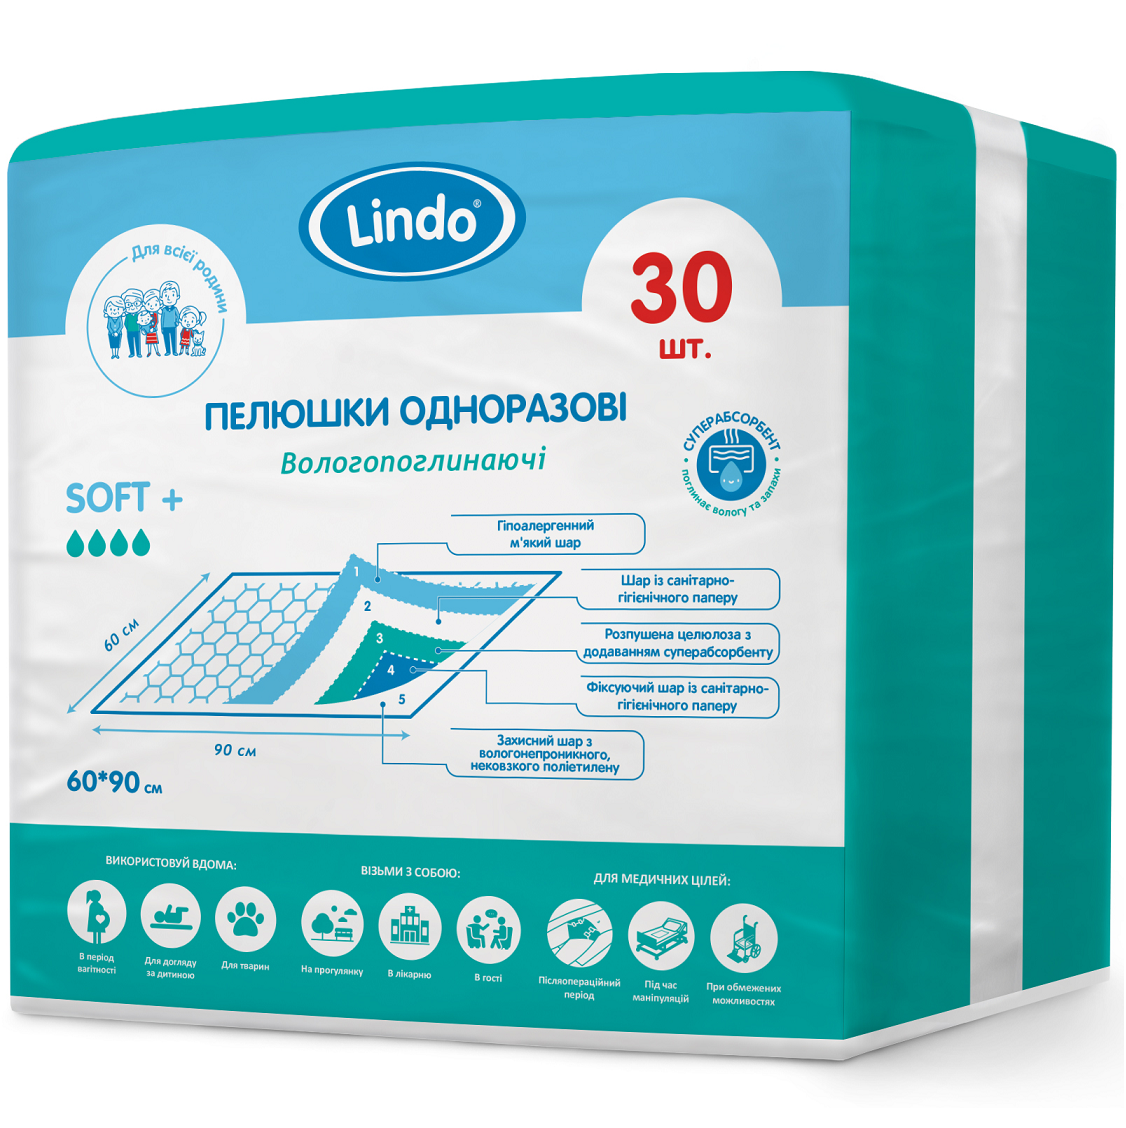 Одноразові гігієнічні пелюшки Lindo, вологопоглинаючі, 90х60 см, 30 шт. (U 51808) - фото 1